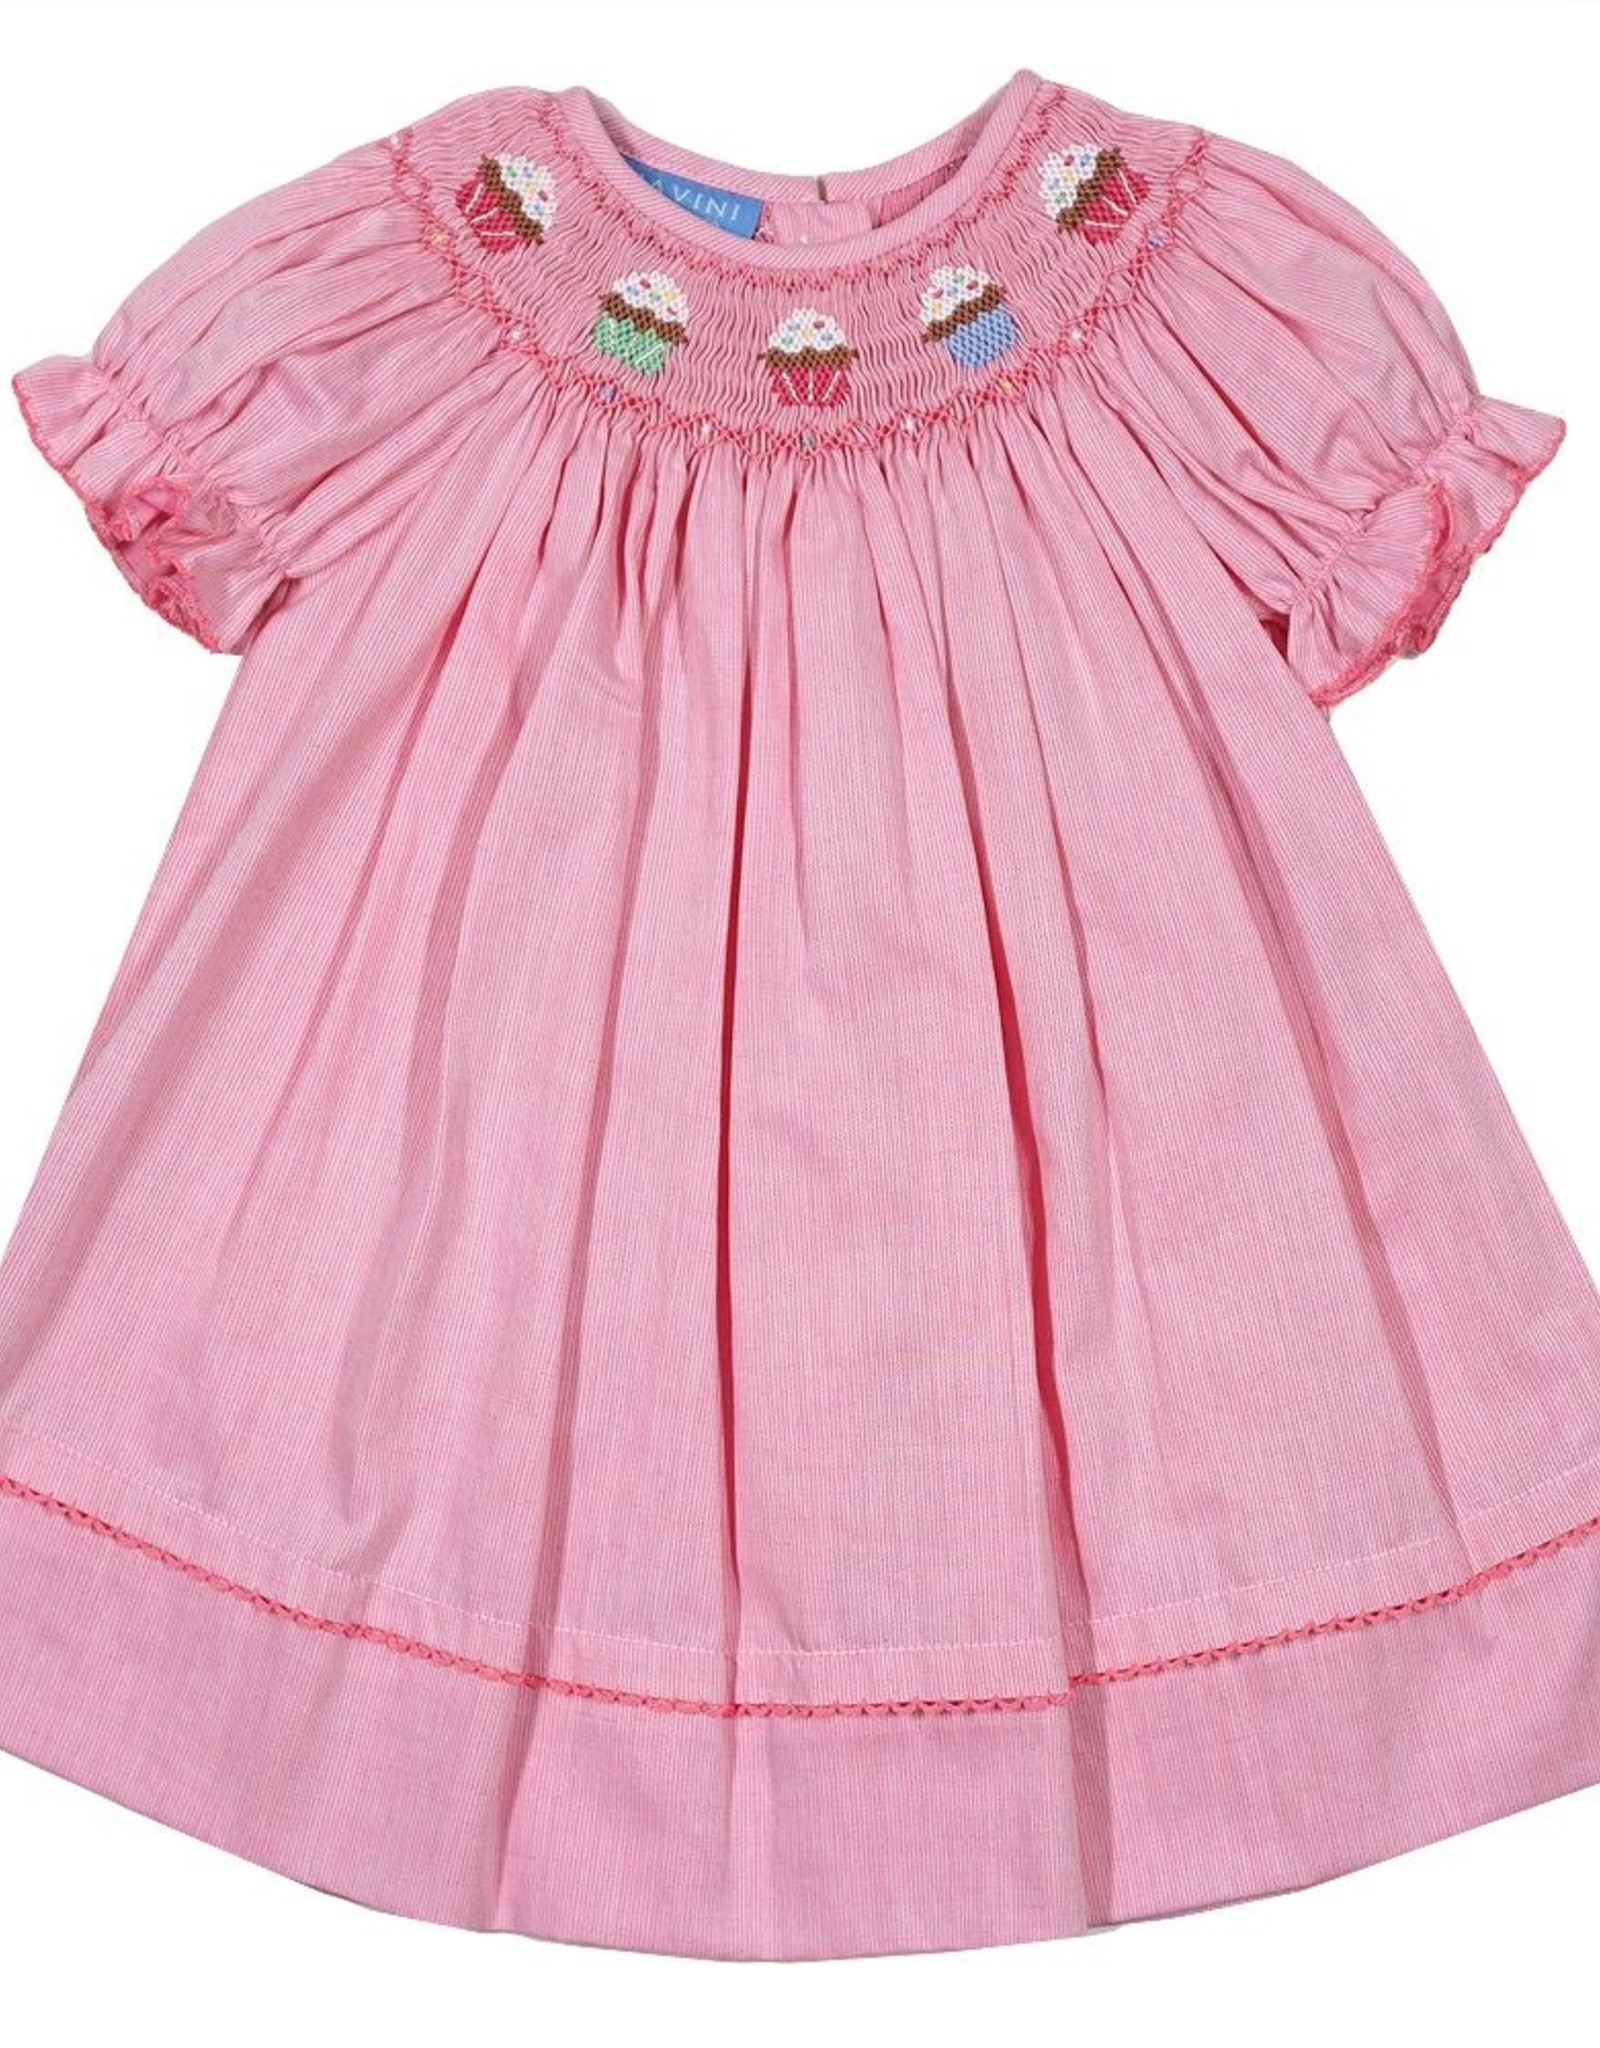 Anavini Pink Bishop Dress with Cupcake Smocking